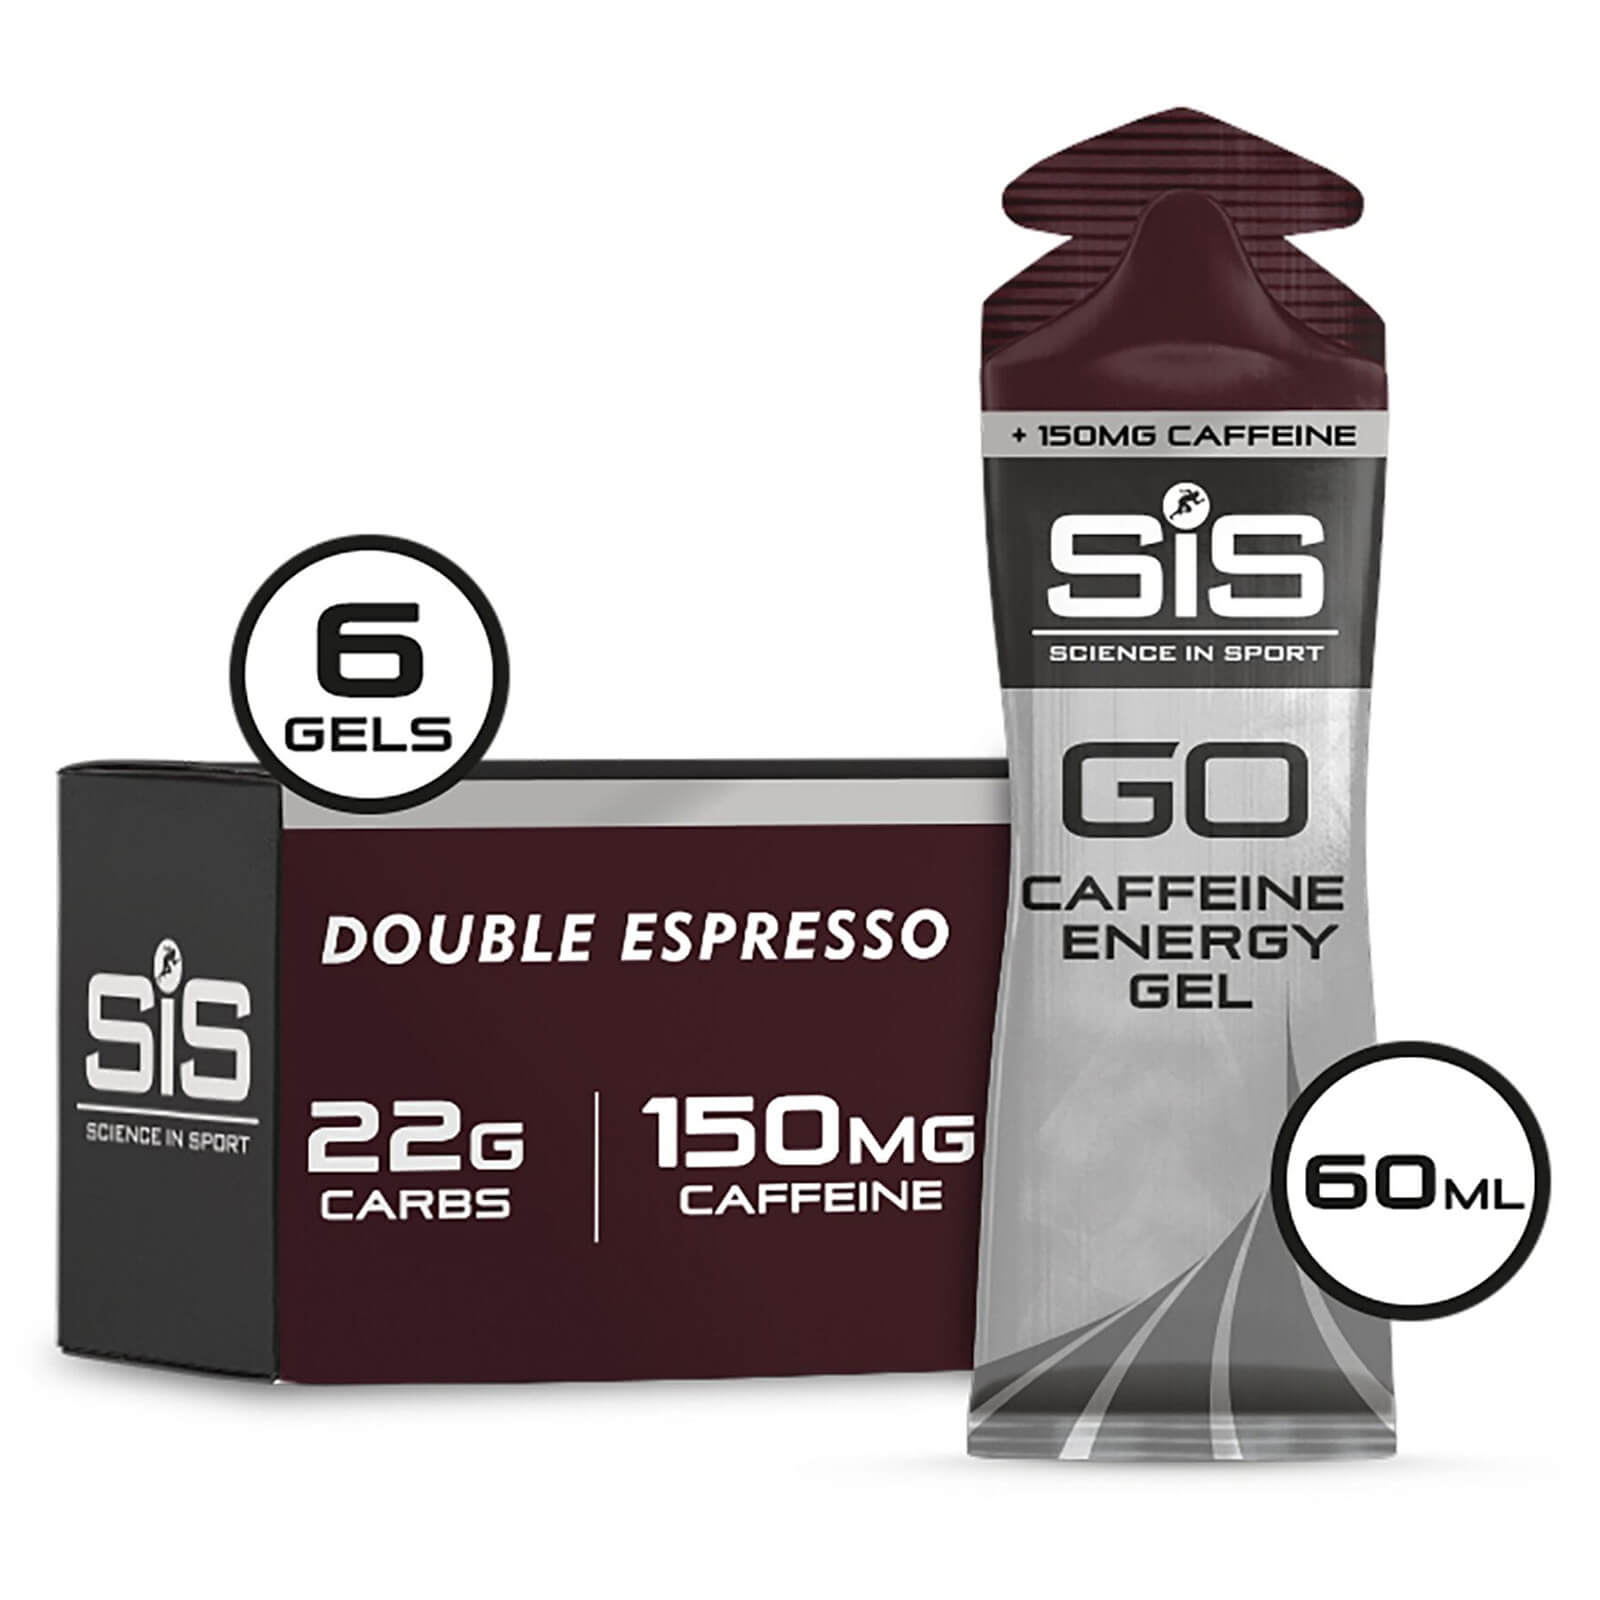 Science in Sport GO + Caffeine Energy Gel 60ml Box of 6 - 6Softgels - Box - Espresso